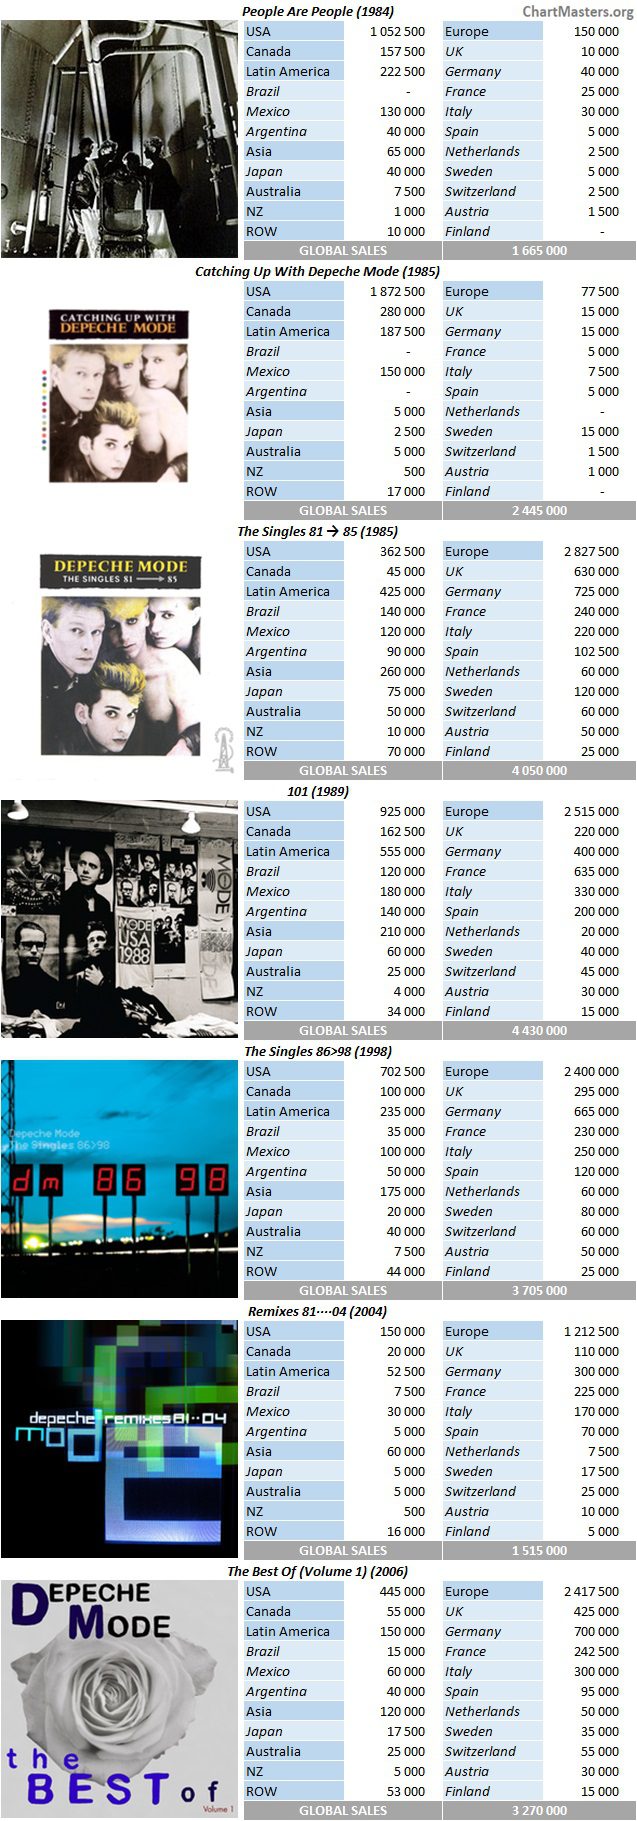 CSPC Depeche Mode top compilations sales breakdowns